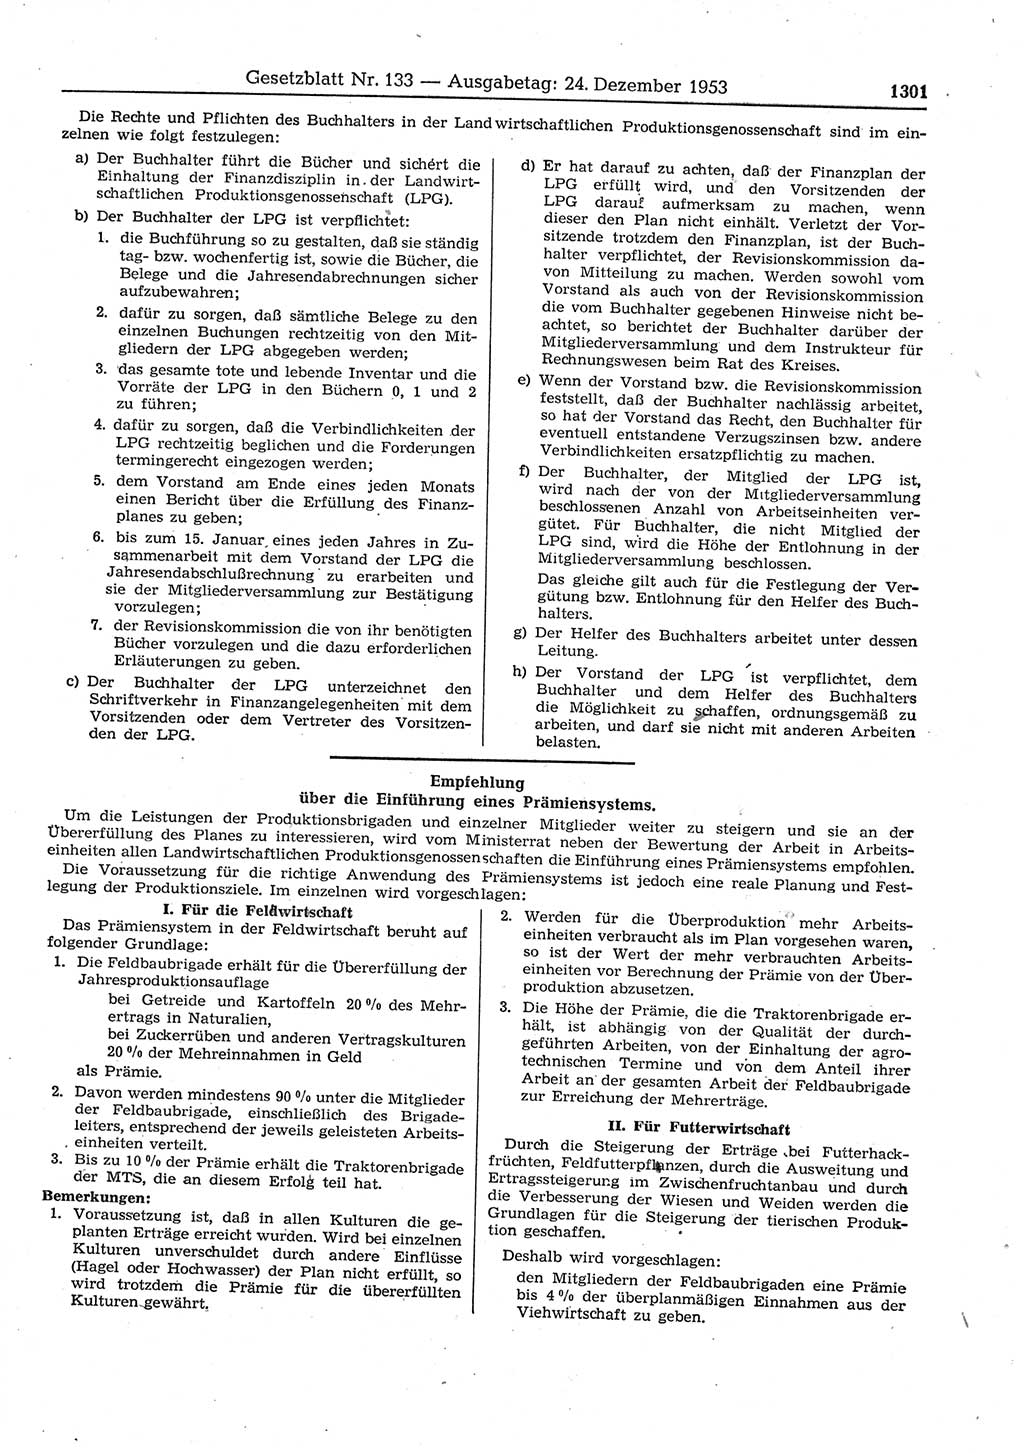 Gesetzblatt (GBl.) der Deutschen Demokratischen Republik (DDR) 1953, Seite 1301 (GBl. DDR 1953, S. 1301)